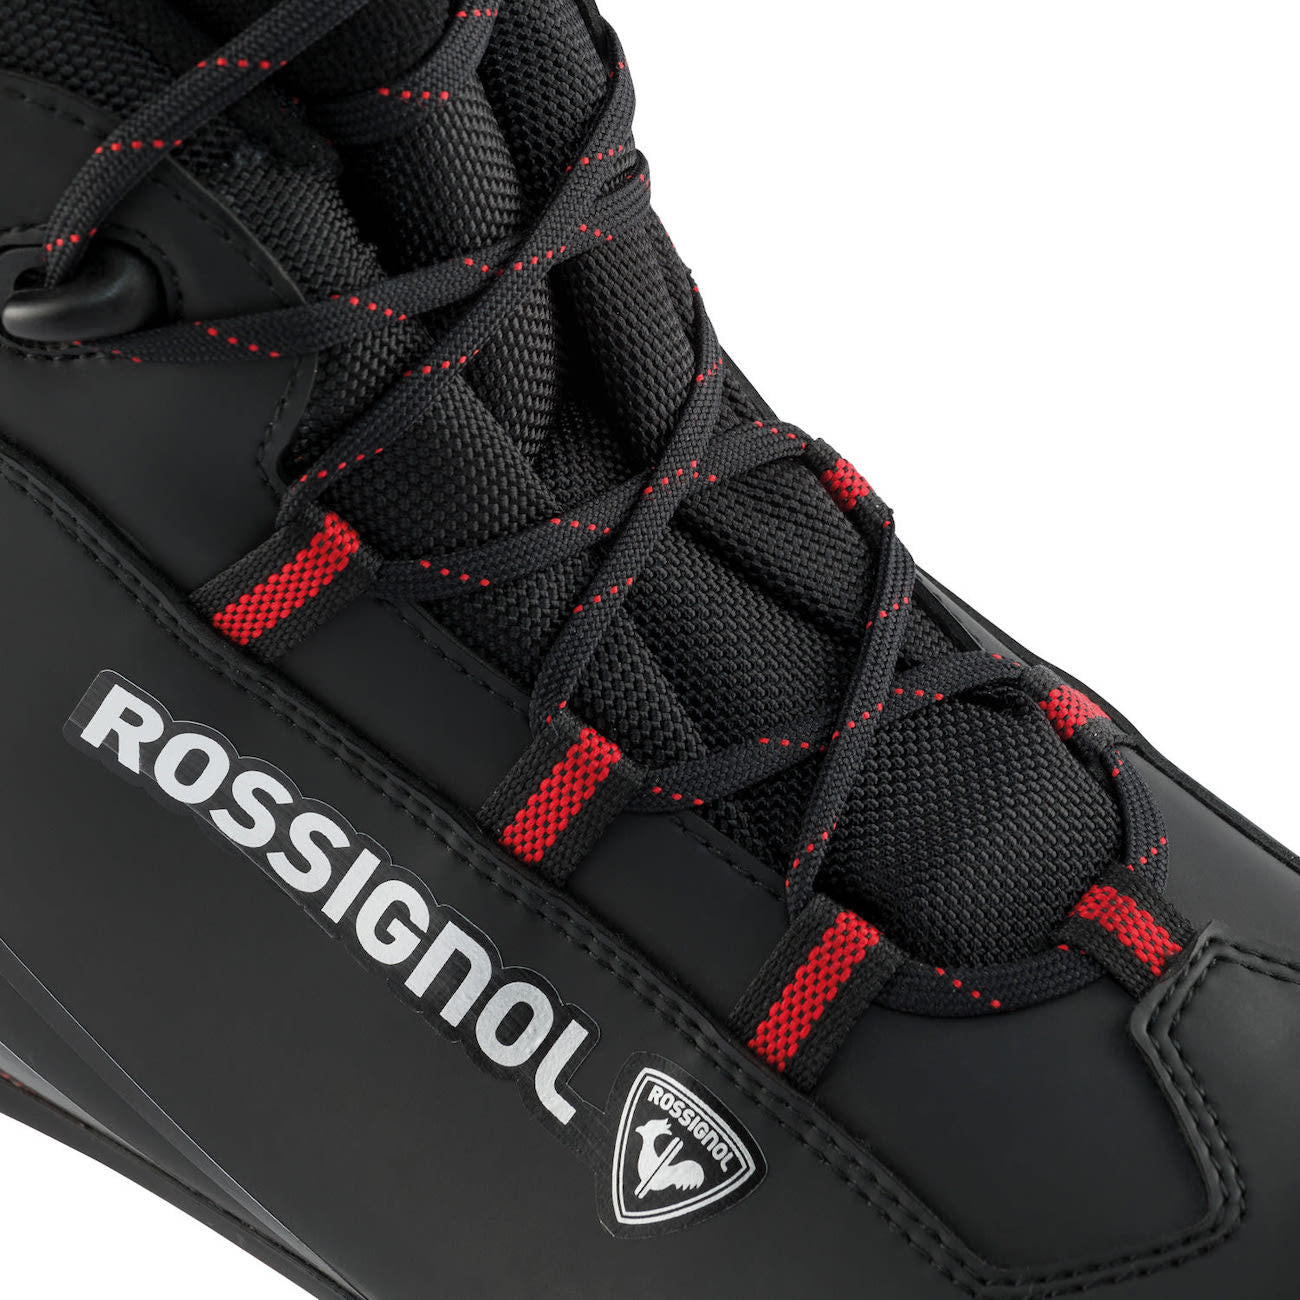 Rossignol Xc1 Boot 2021 4